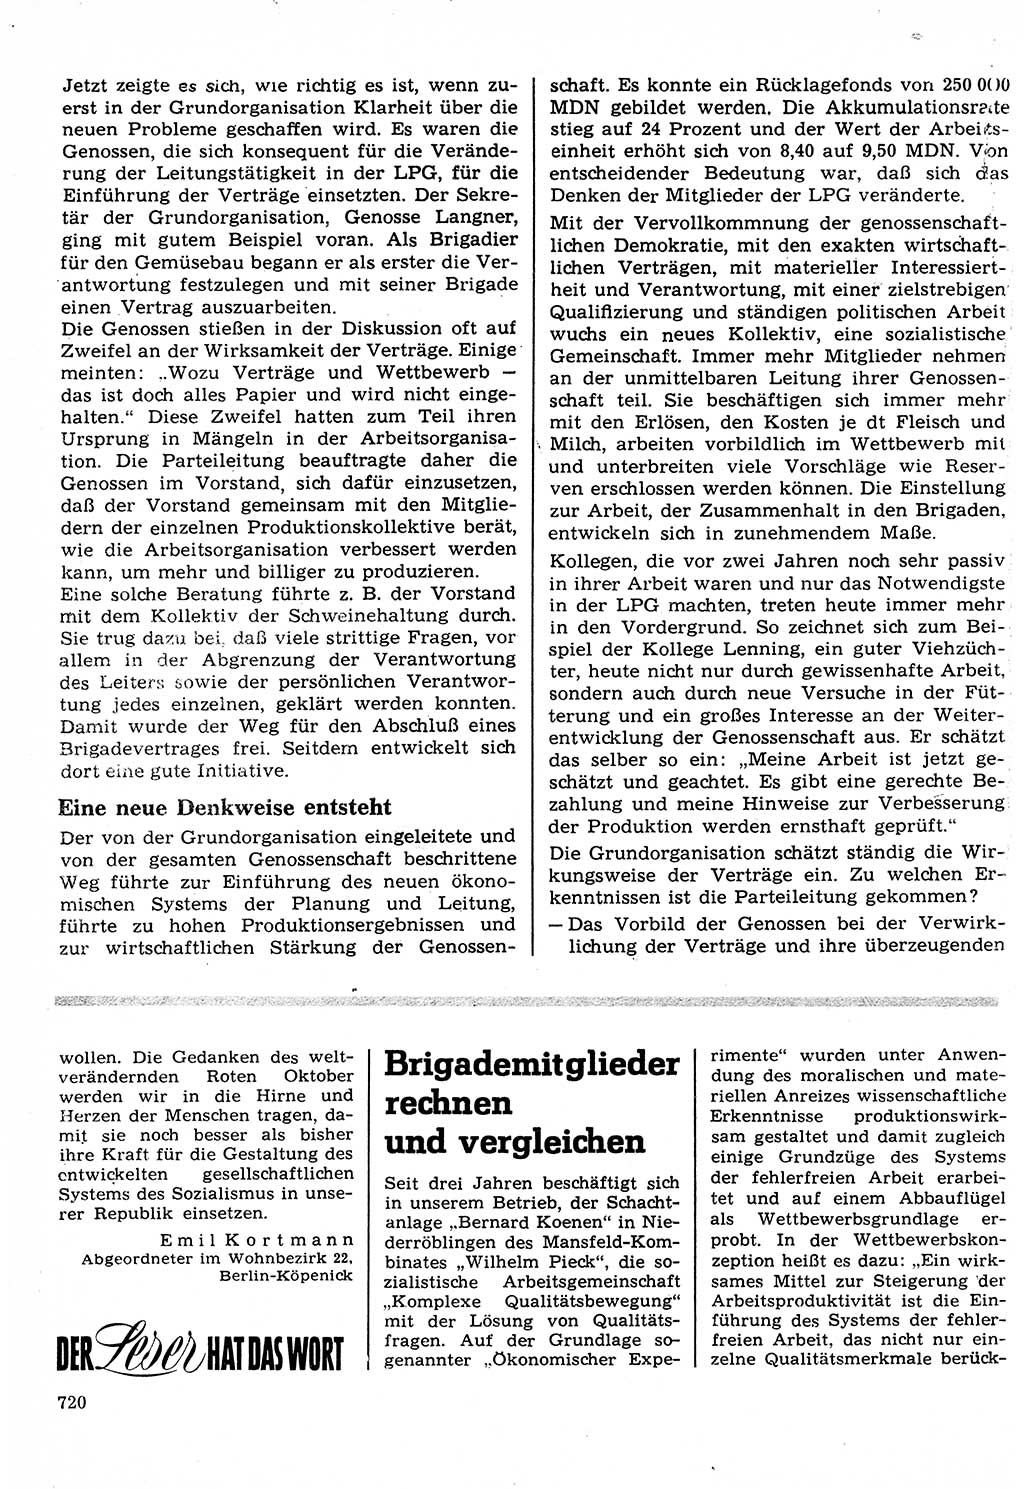 Neuer Weg (NW), Organ des Zentralkomitees (ZK) der SED (Sozialistische Einheitspartei Deutschlands) für Fragen des Parteilebens, 22. Jahrgang [Deutsche Demokratische Republik (DDR)] 1967, Seite 720 (NW ZK SED DDR 1967, S. 720)